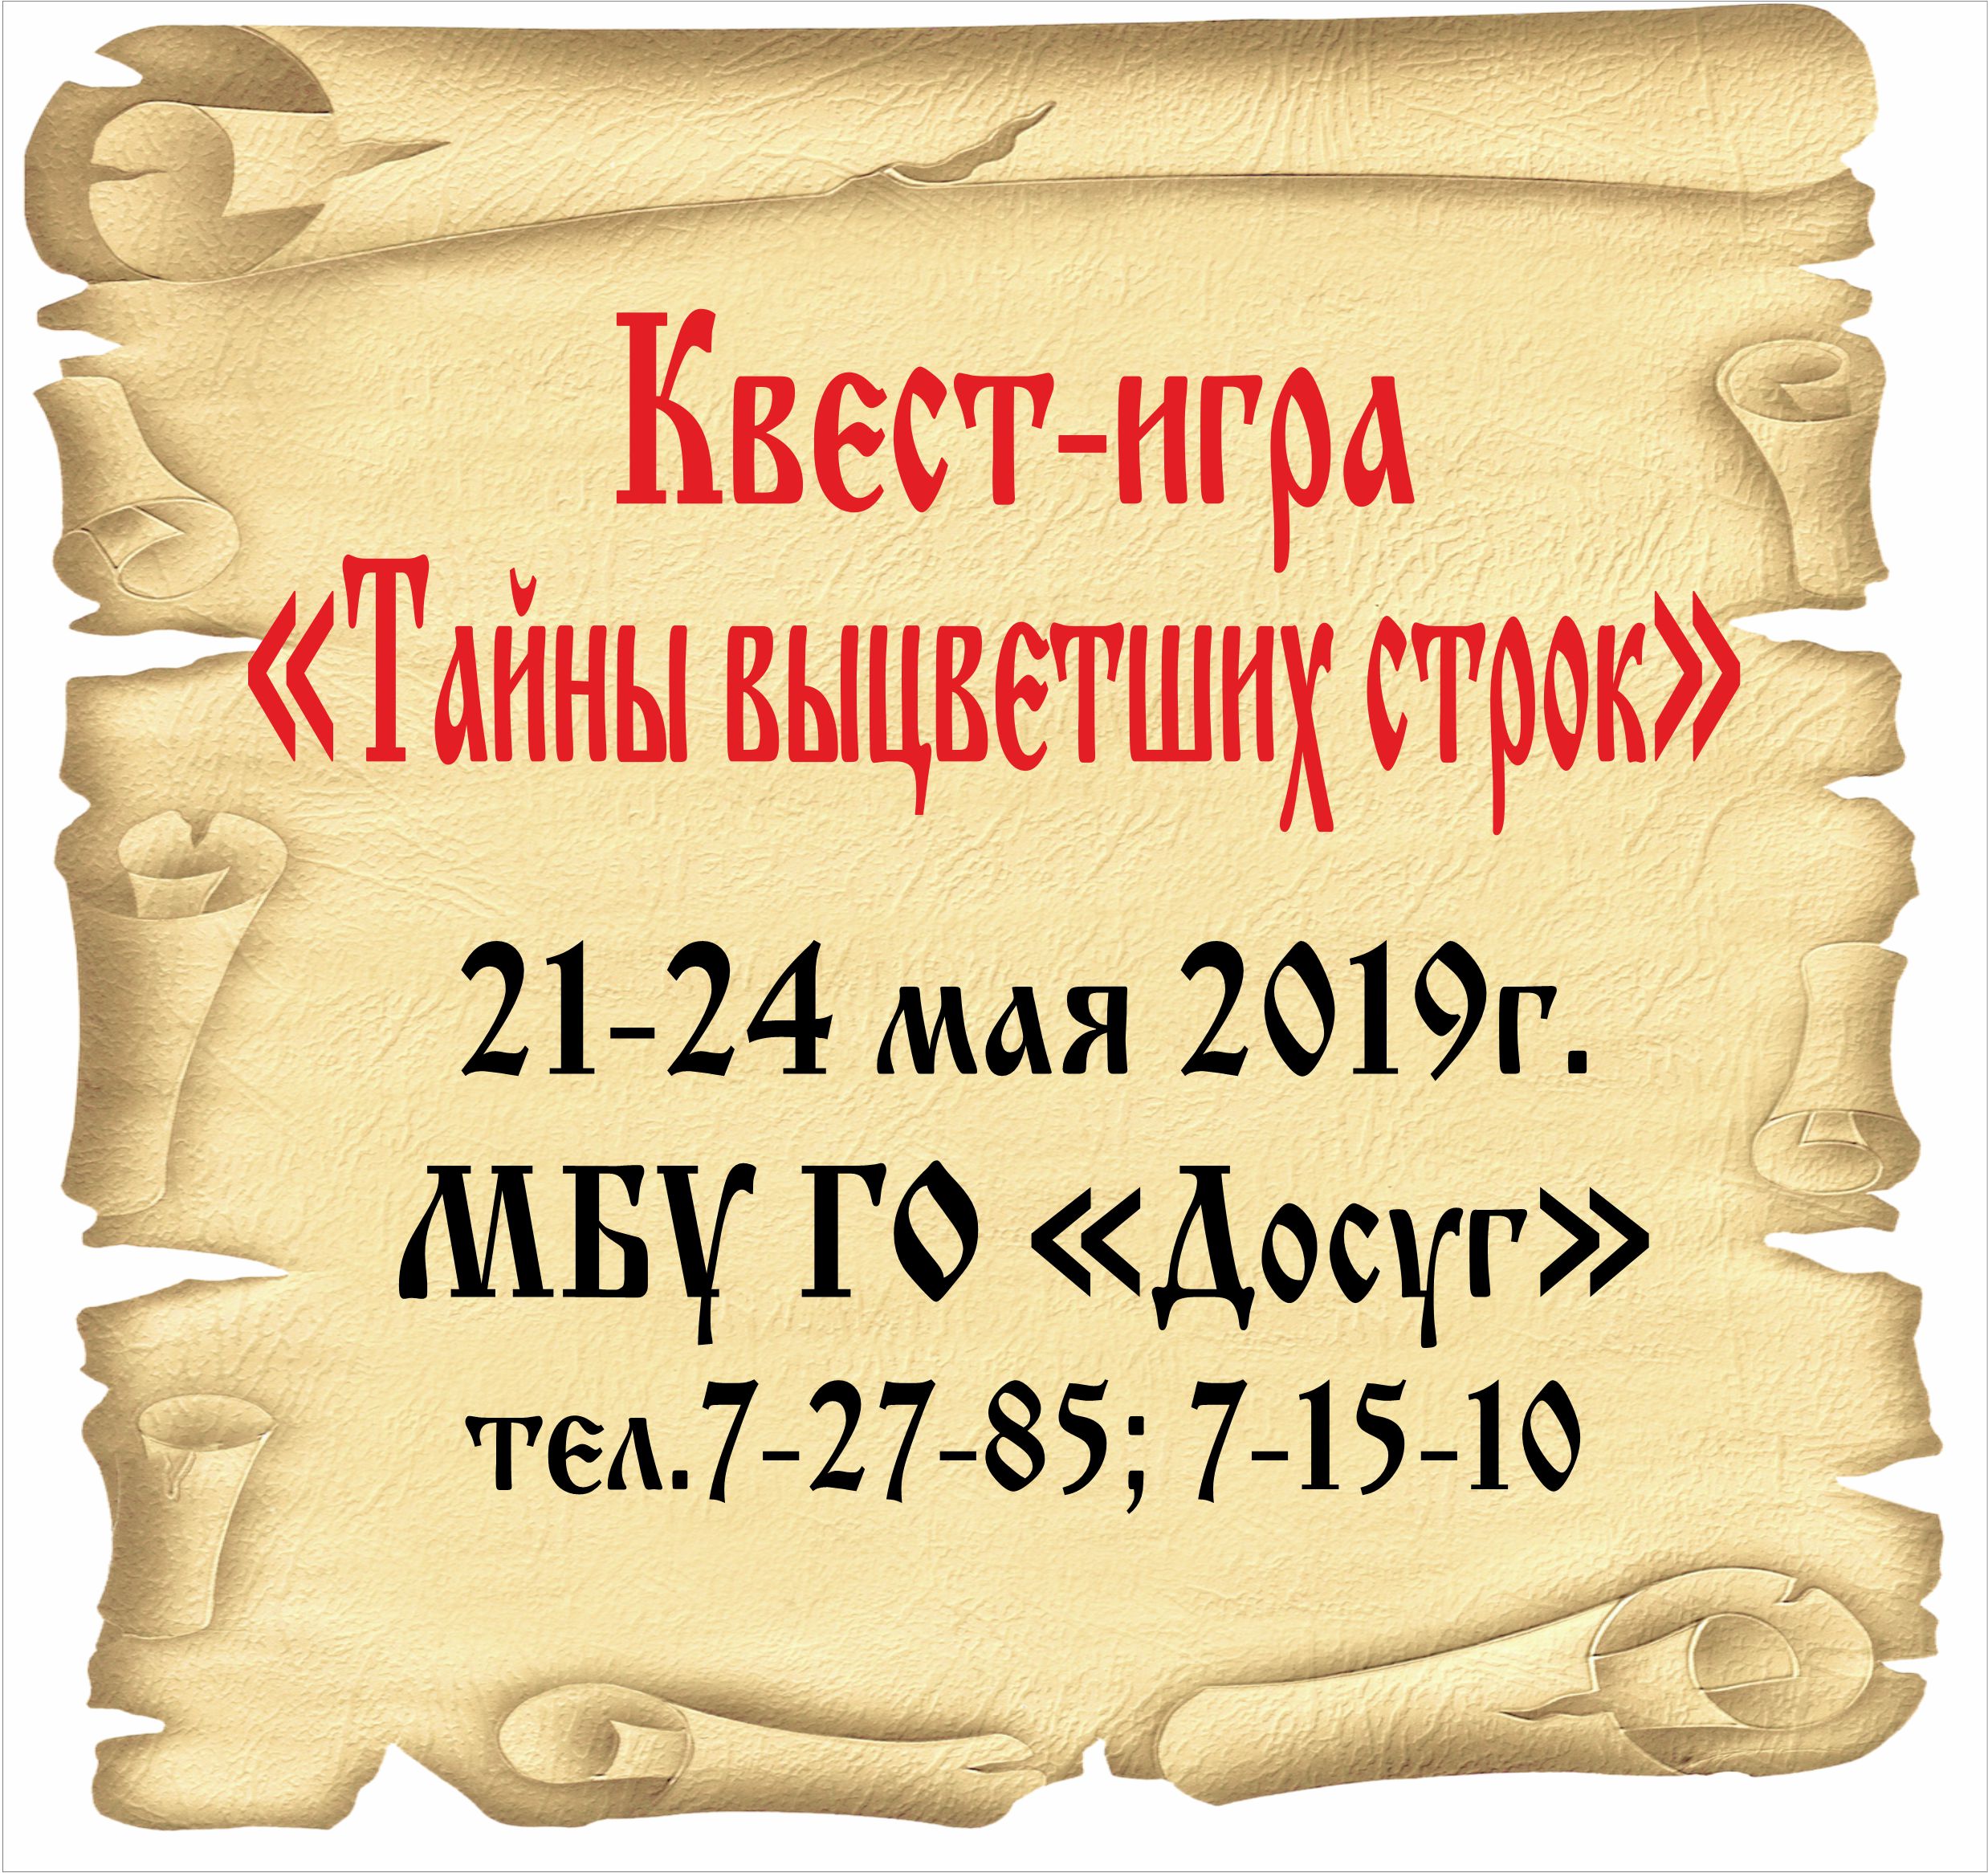 –— 21-24 мая Квест-игра “Тайны выцветших строк” цена билета: 100 руб. возрастной ценз 6+ 